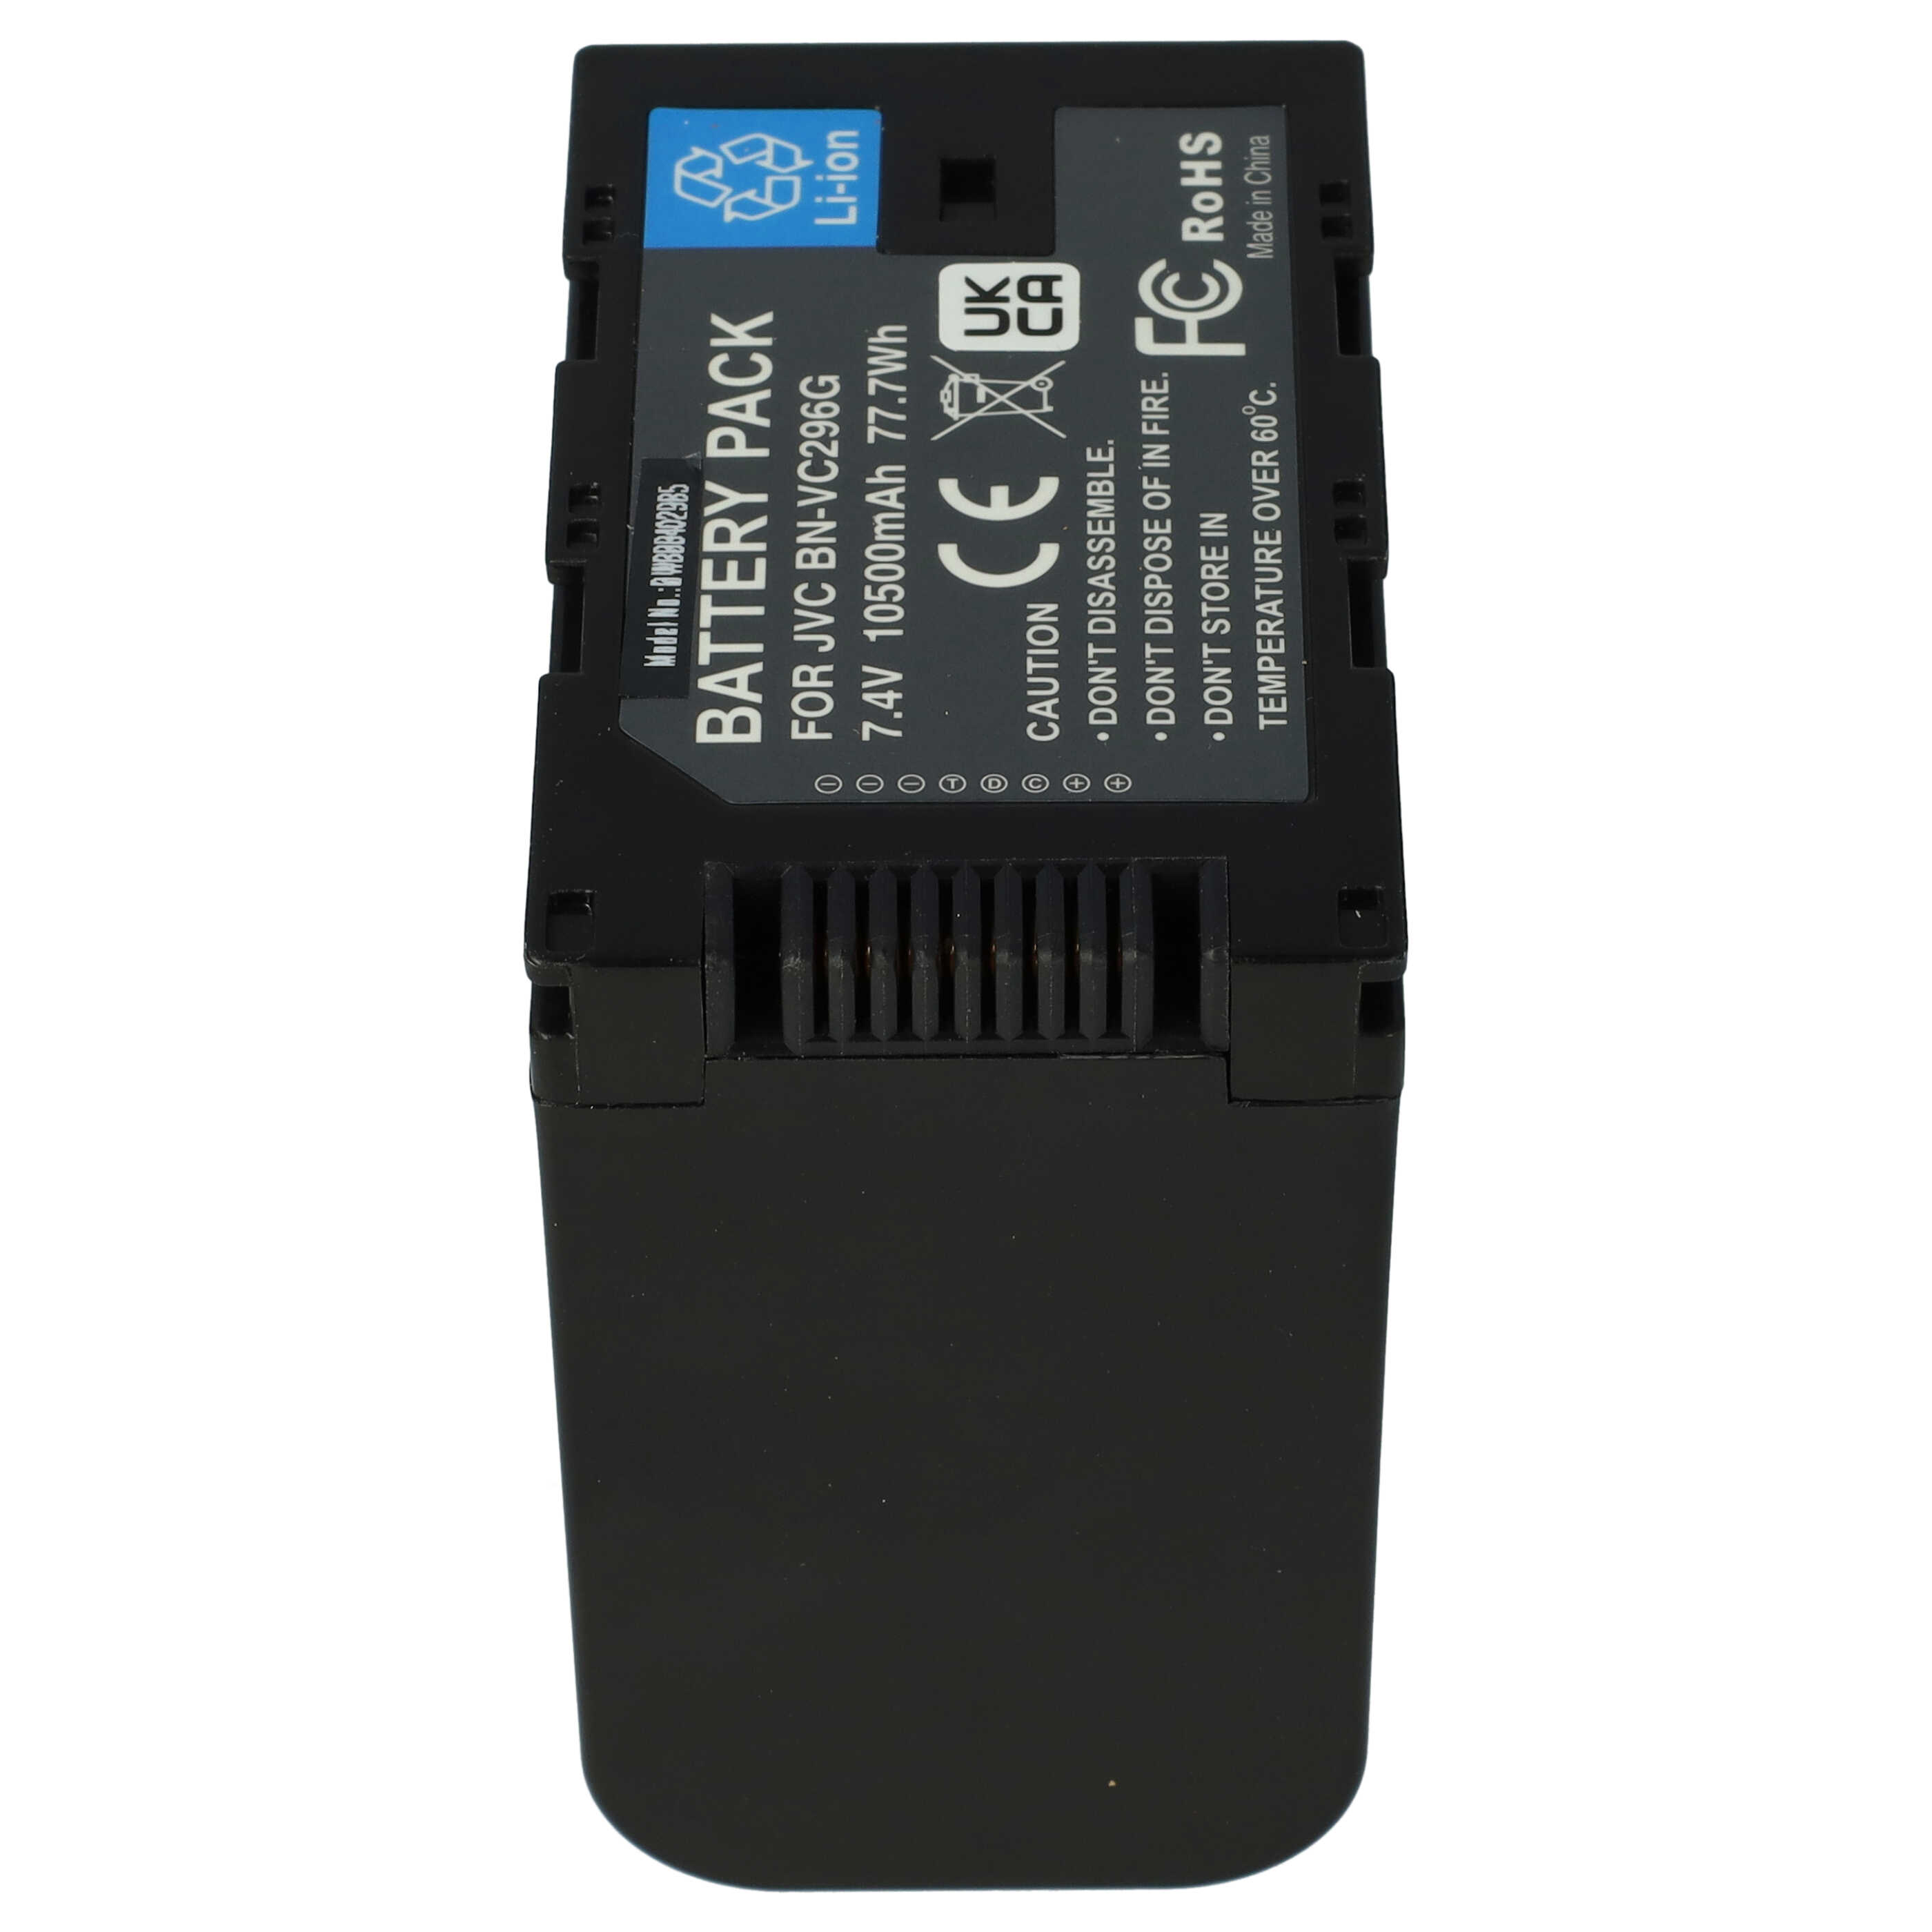 Batterie remplace JVC BN-VC298G, BN-VC296G, BN-VC264G pour caméscope - 10500mAh 7,4V Li-ion